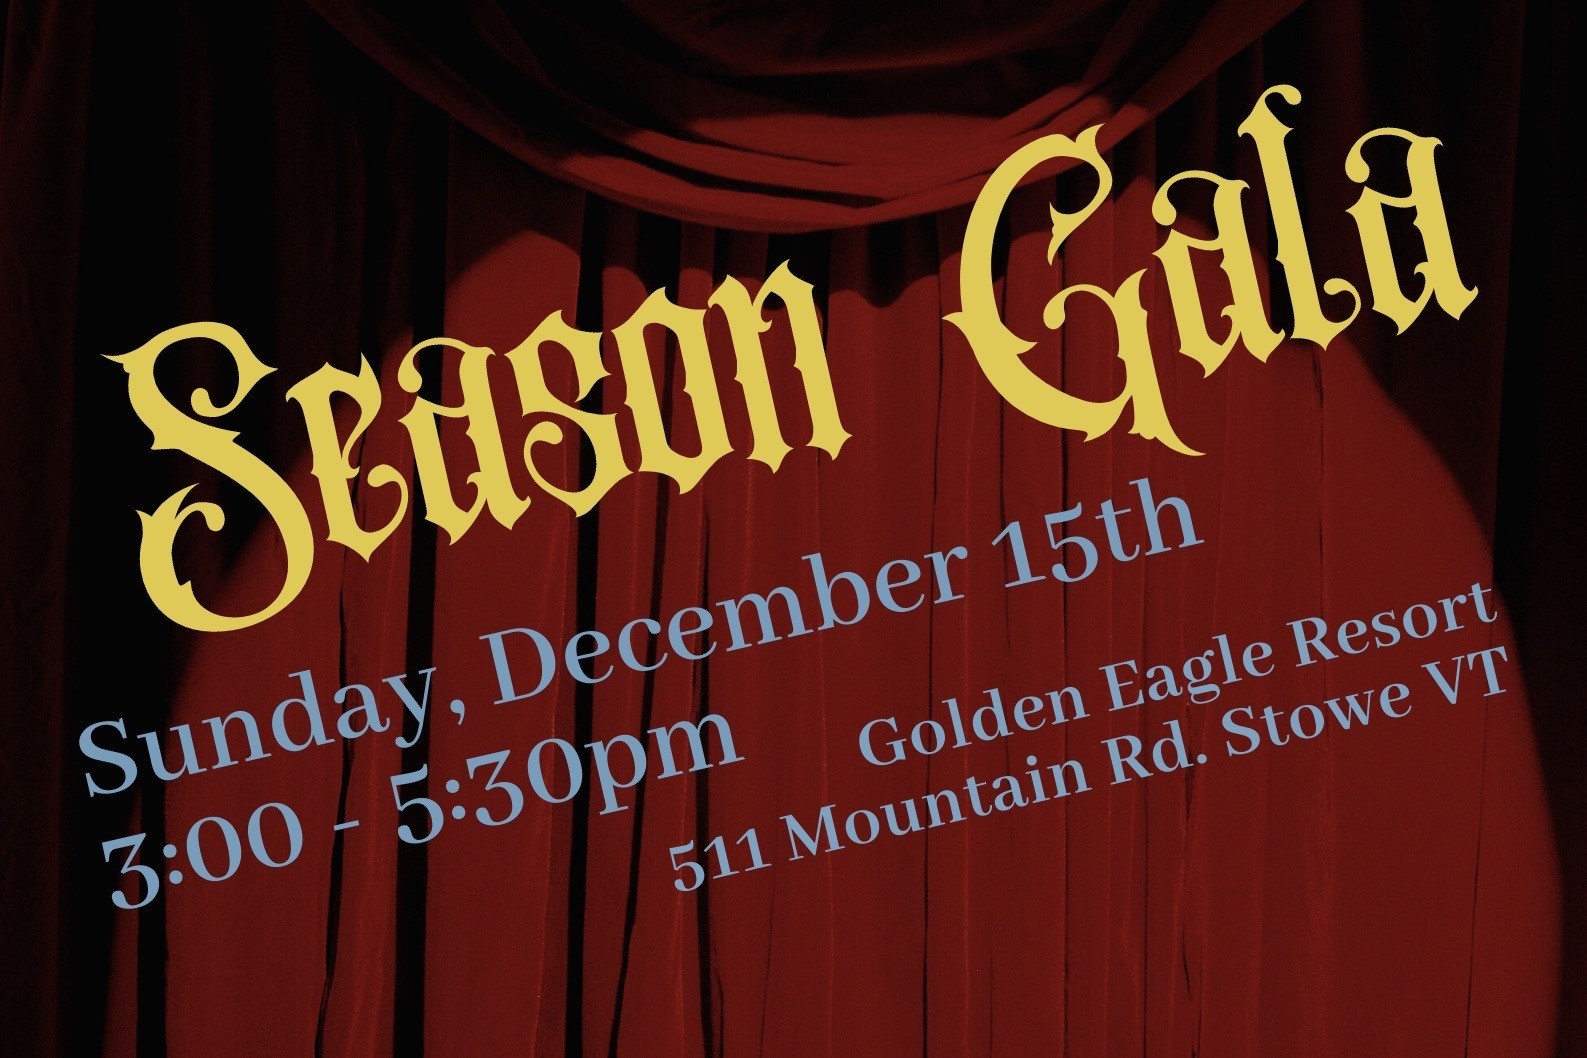 Season Gala, Sunday, Dec. 15 at 3:00 p.m. at Golden Eagle Resort